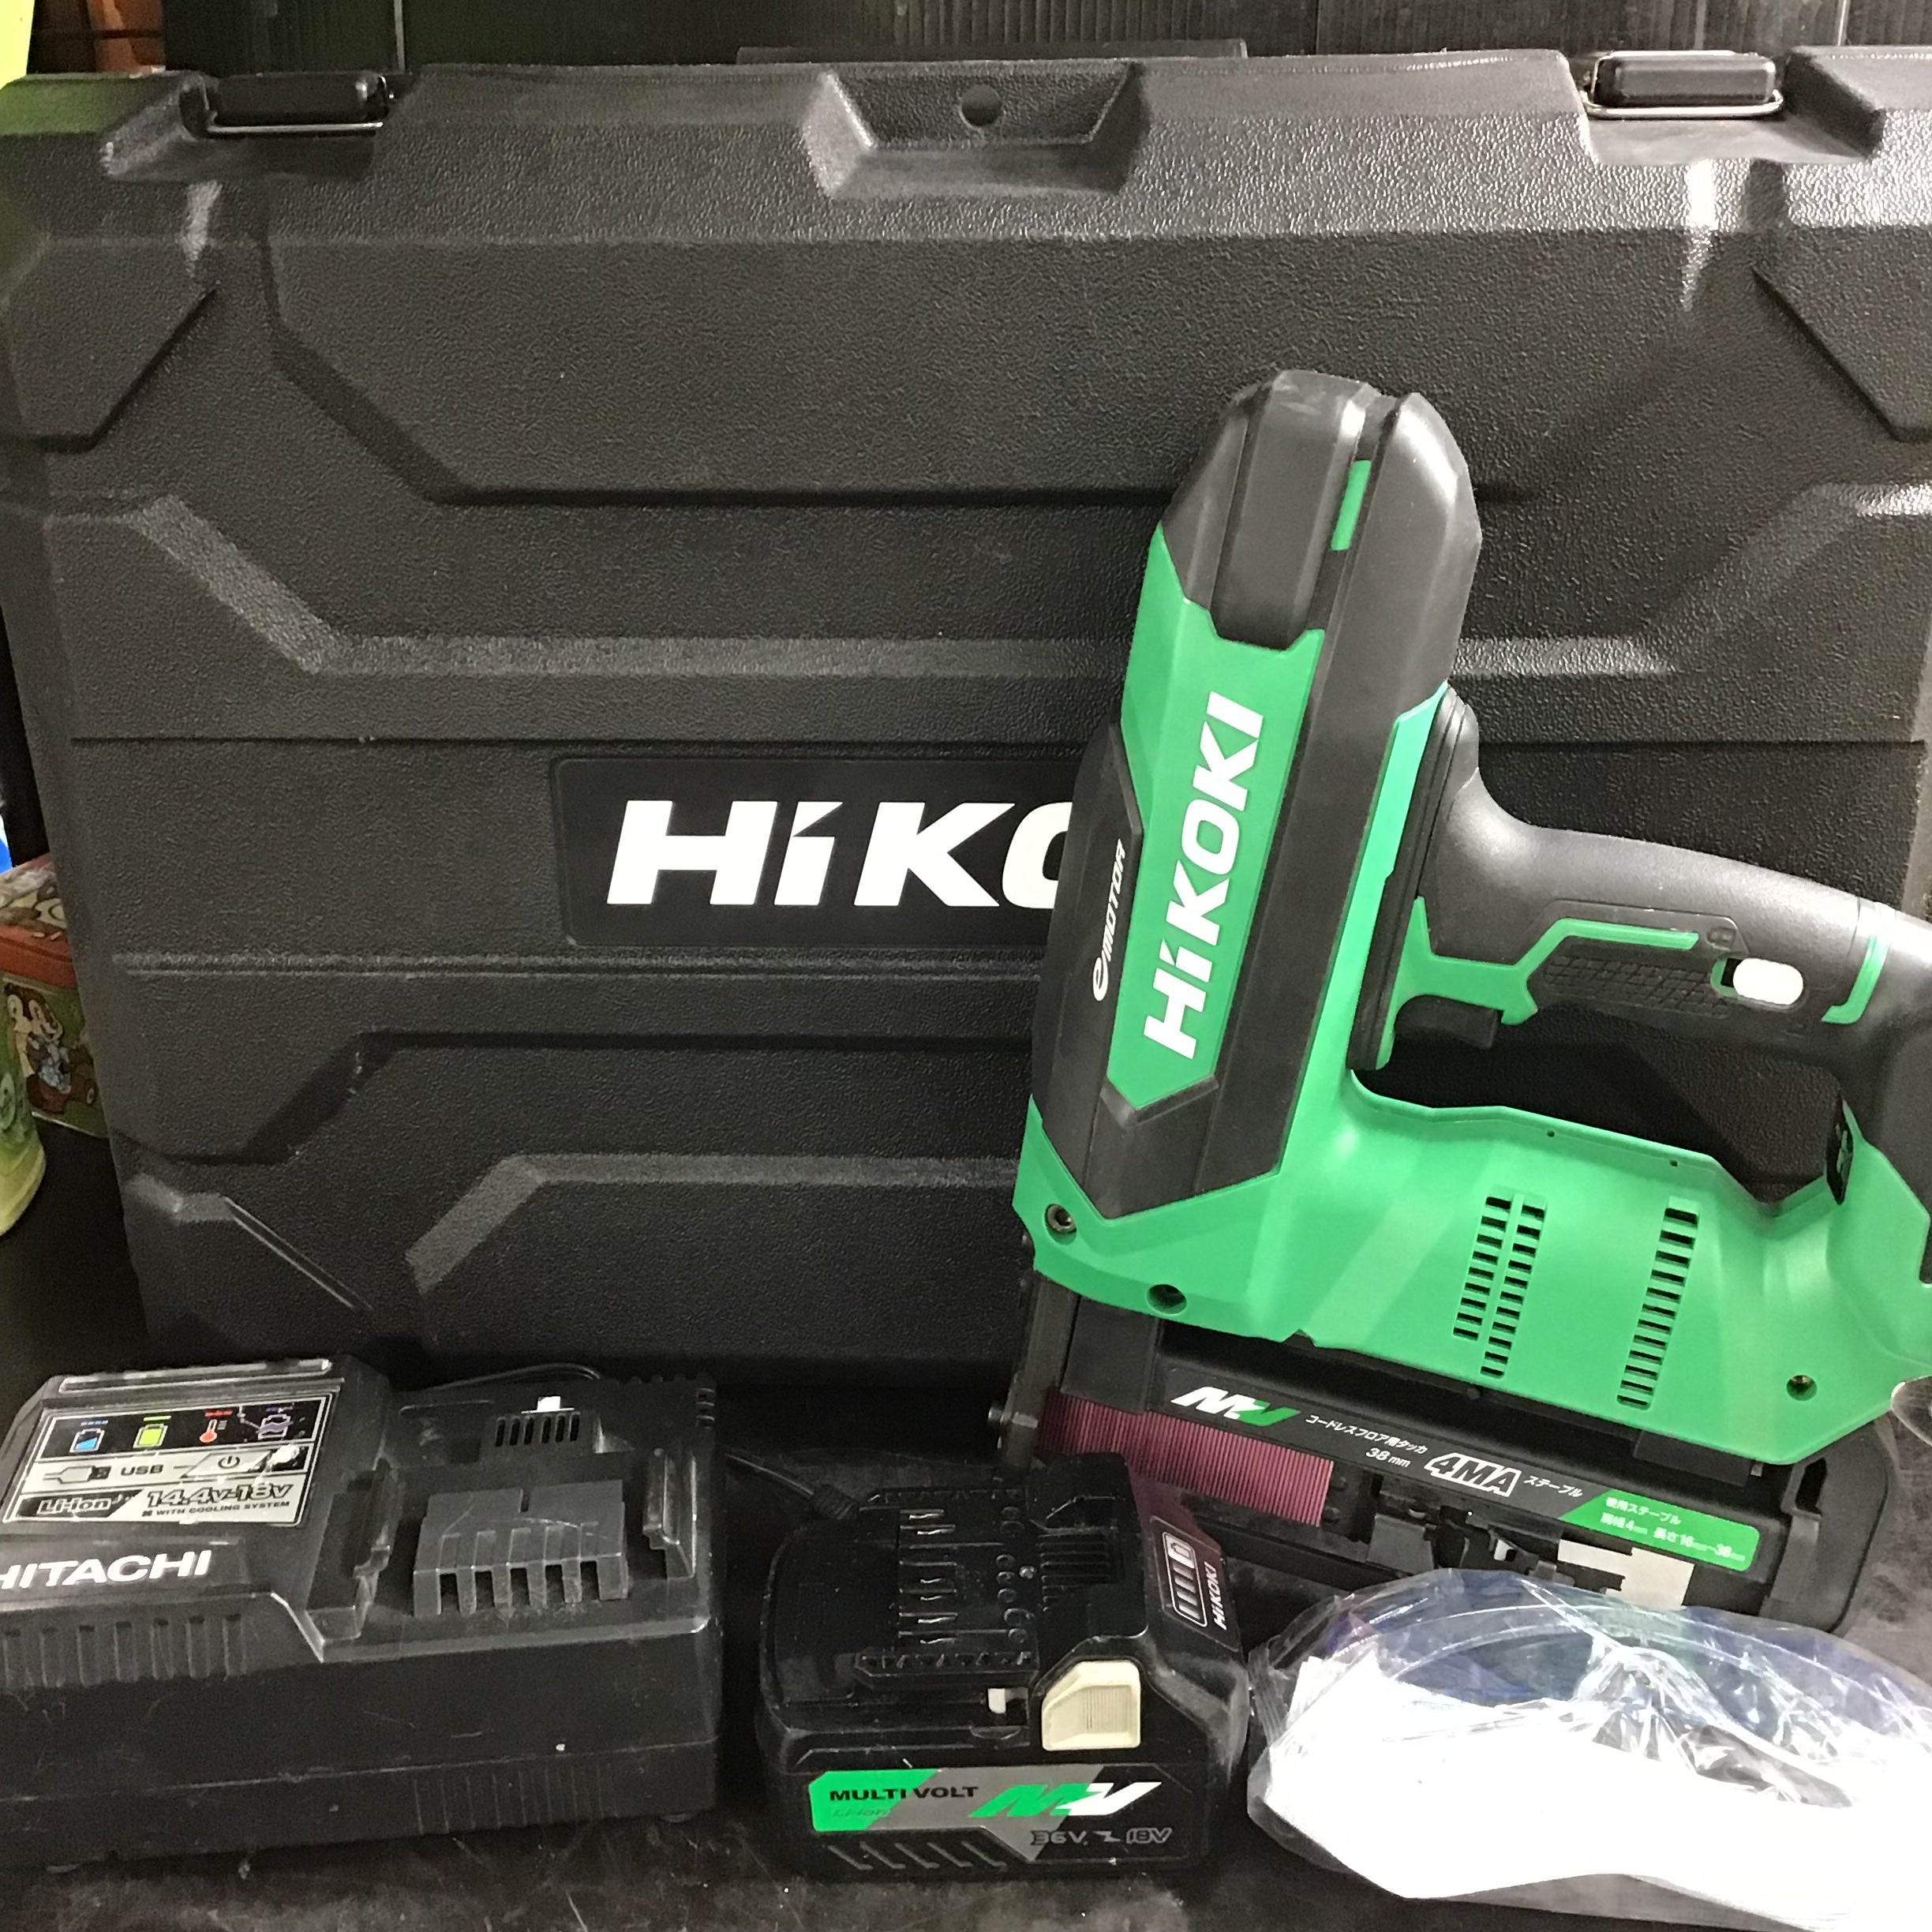 HiKOKI(ハイコーキ) N3604DM(XP) 充電式フロアタッカー 36V 蓄電池もう